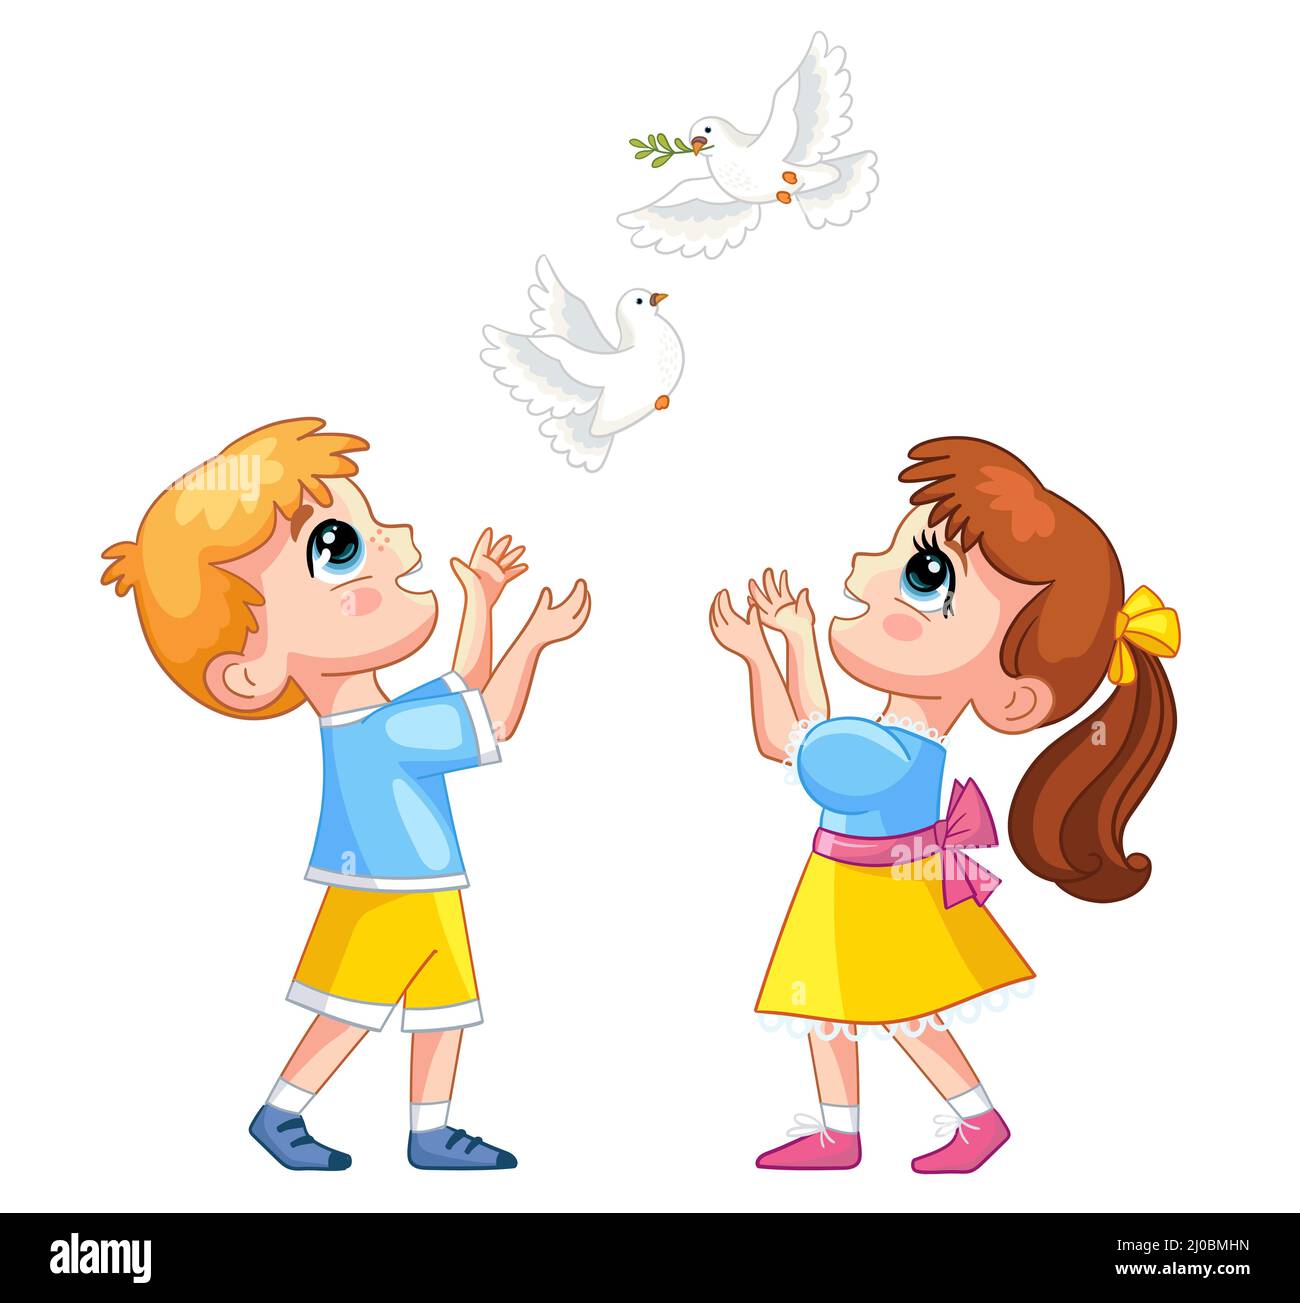 Petit dessin animé joyeux garçon et fille personnages dans des vêtements jaunes et bleus avec des colombes blanches. Illustration vectorielle isolée sur fond blanc Illustration de Vecteur